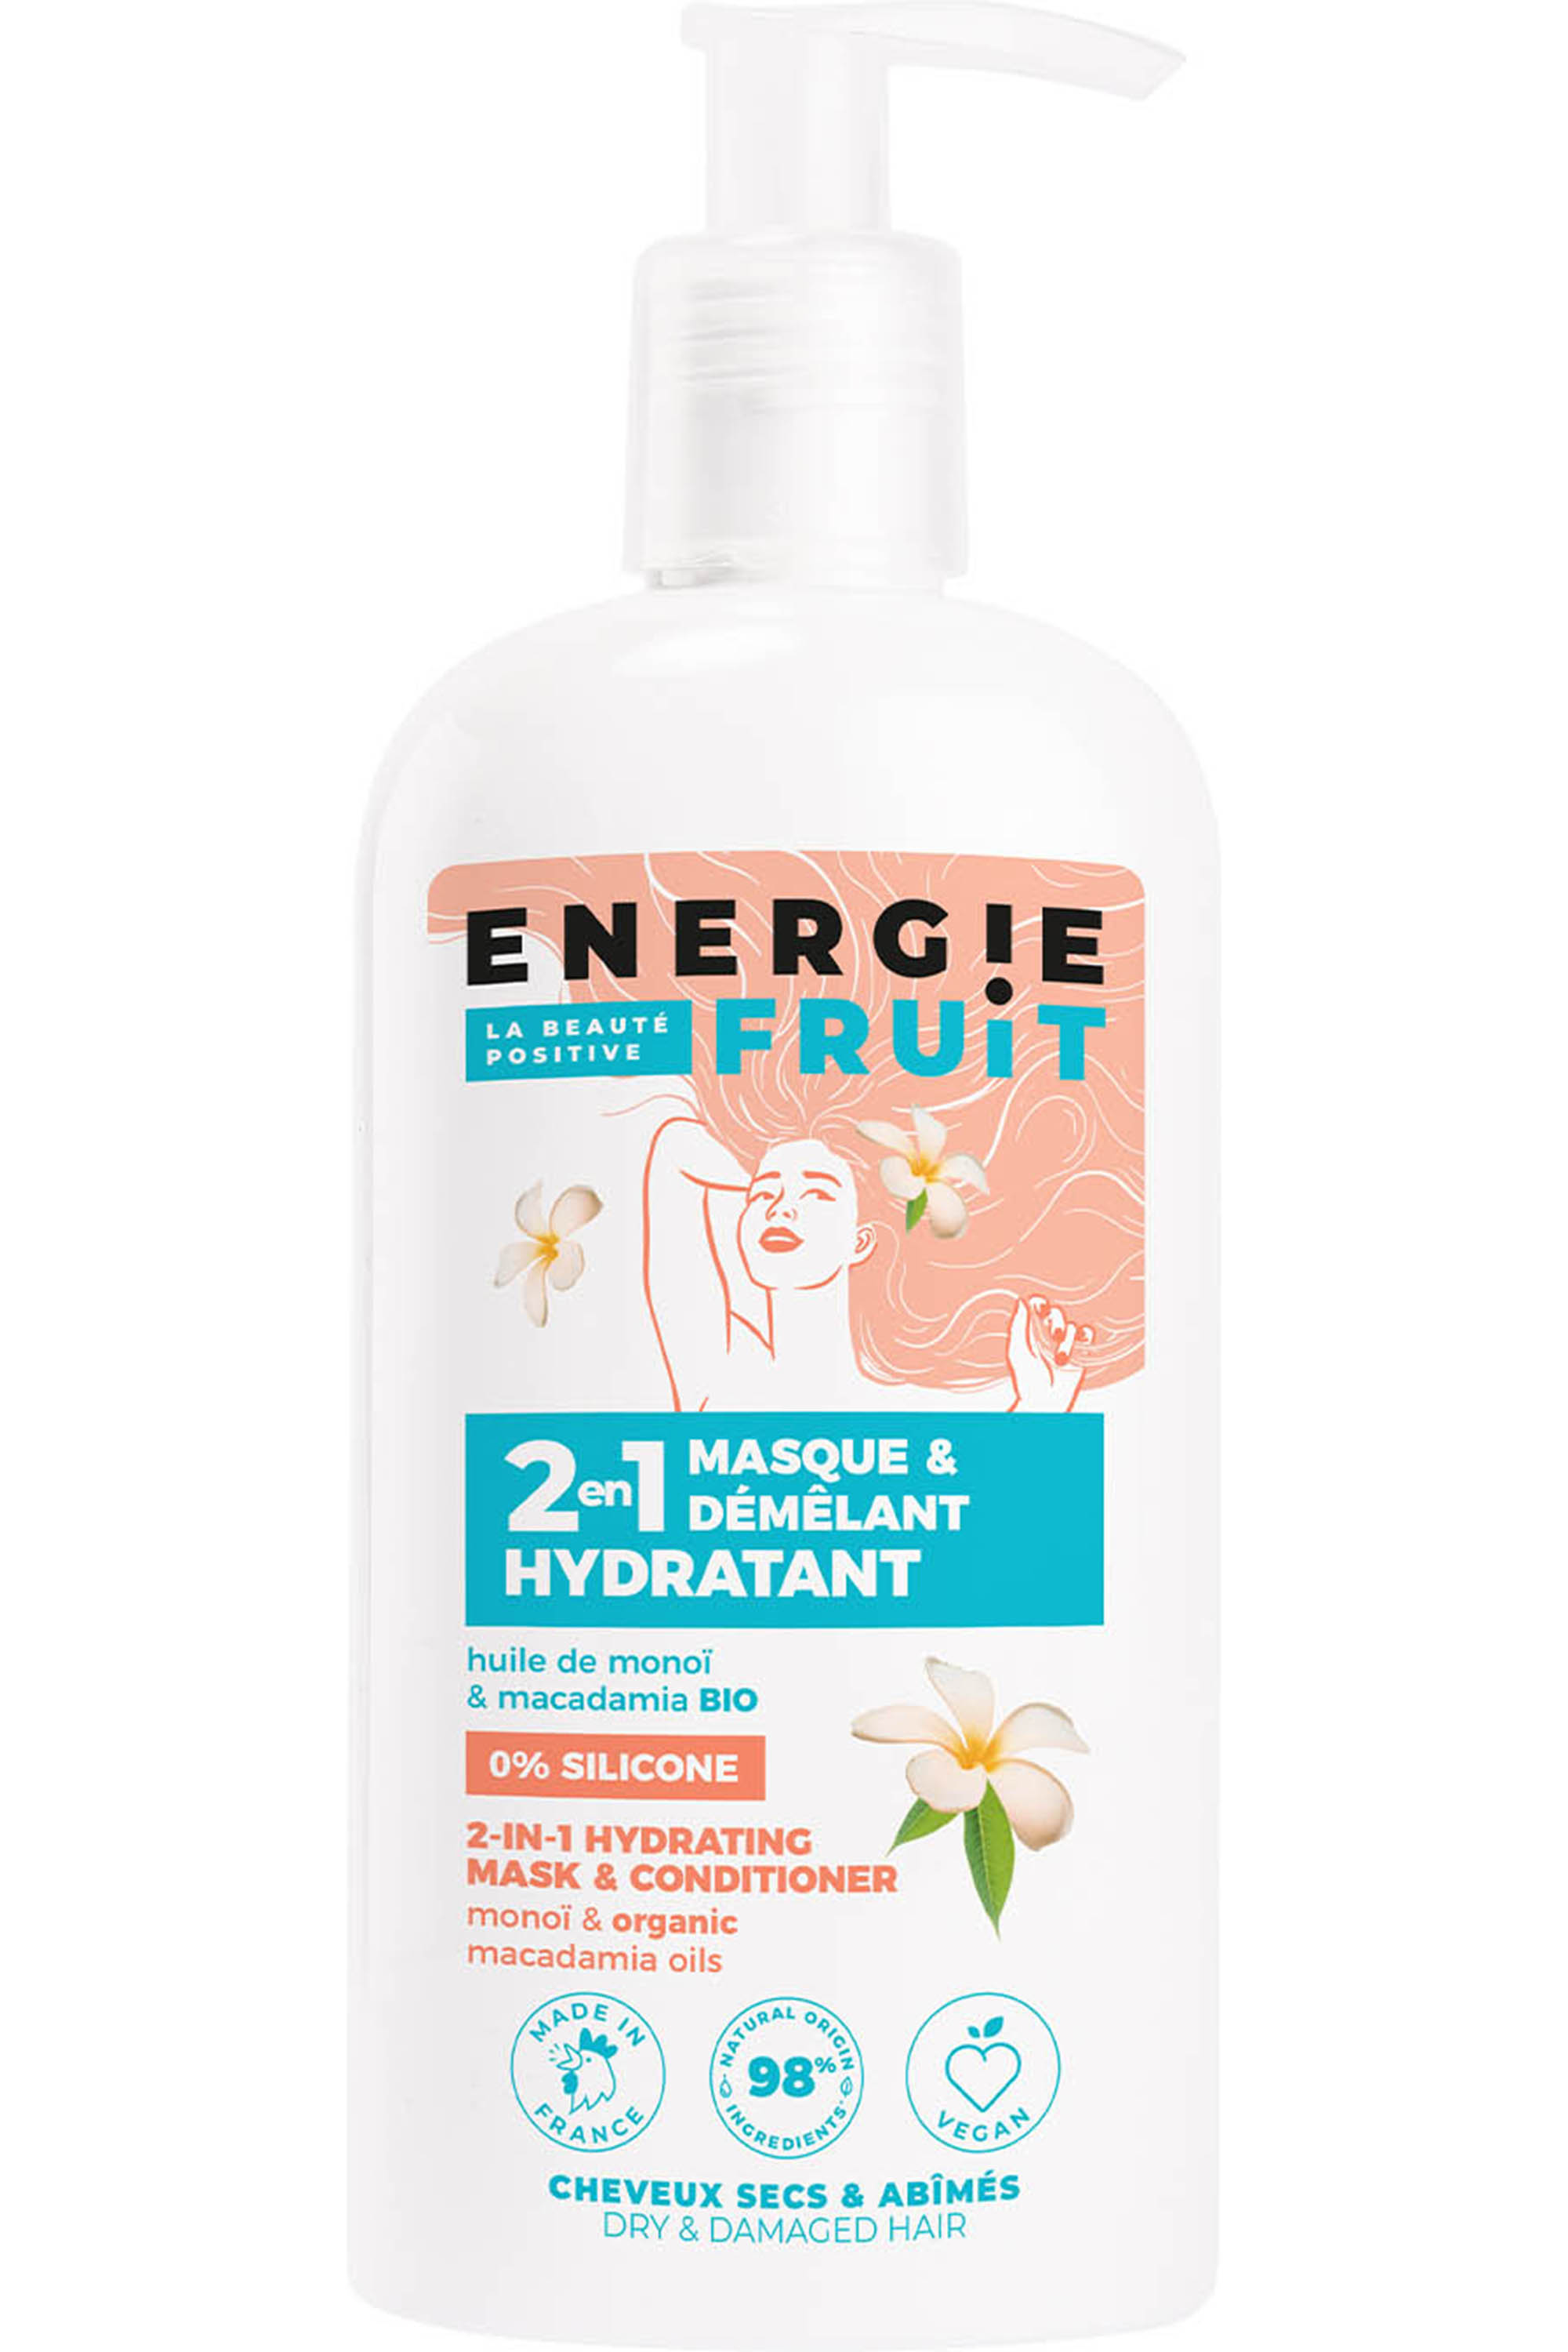 Energie Fruit - Shampoing sec monoï, 150ml